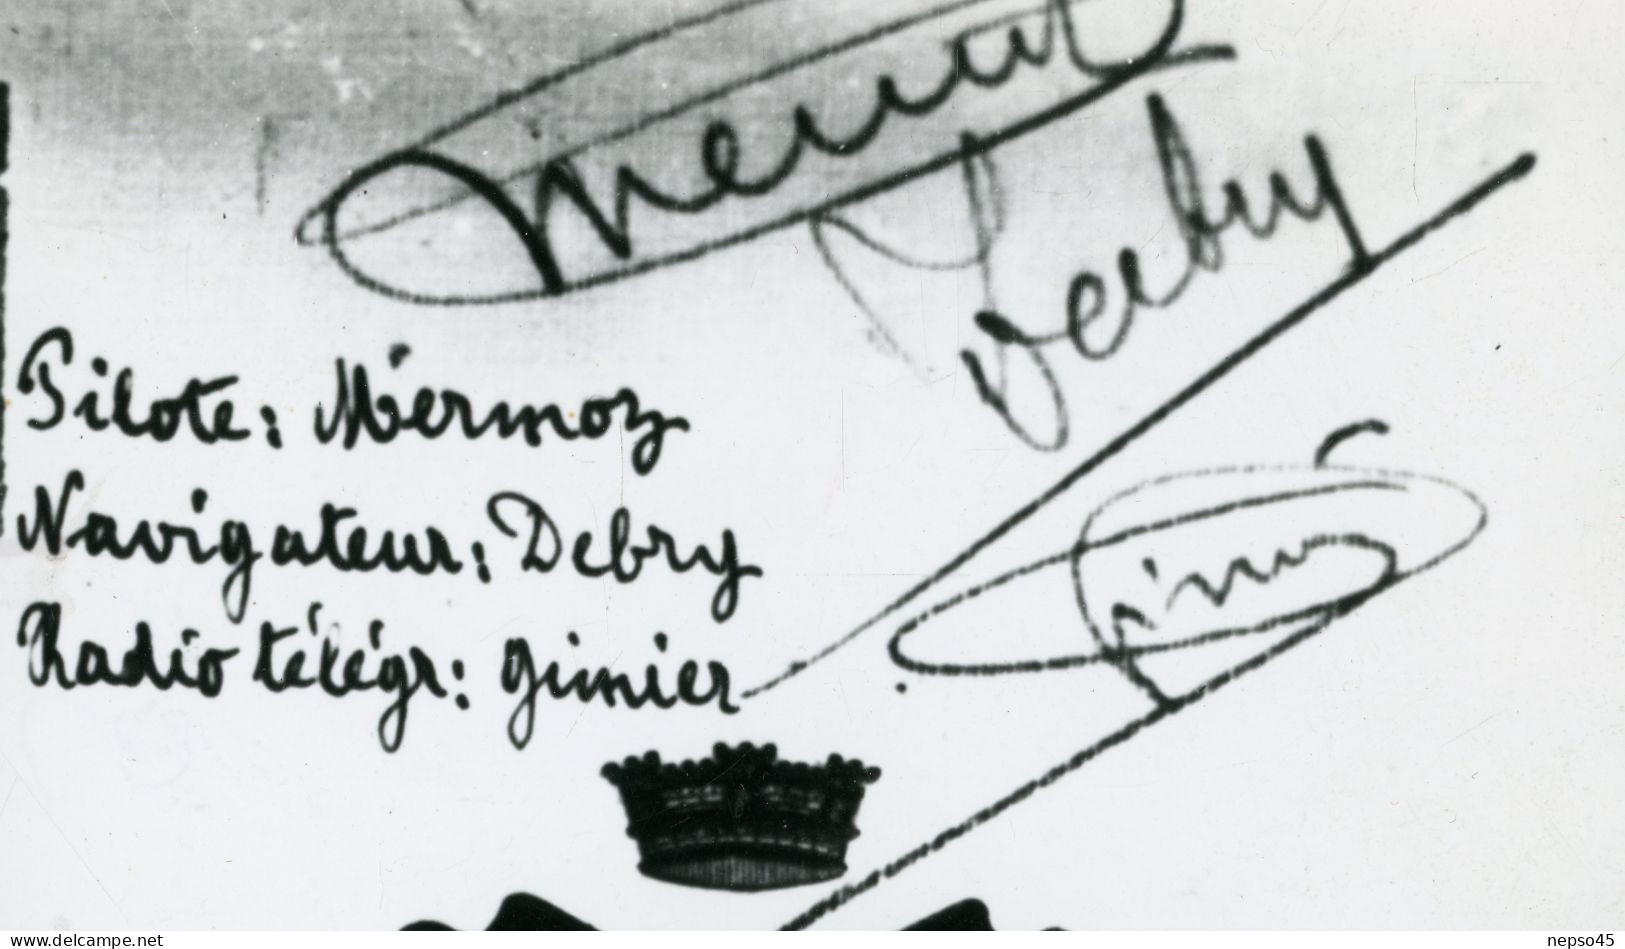 avion.courrier signé Mermoz voyagé liaison postale Paris France et Rio  Amérique du sud.Laté 28.détails du voyage.